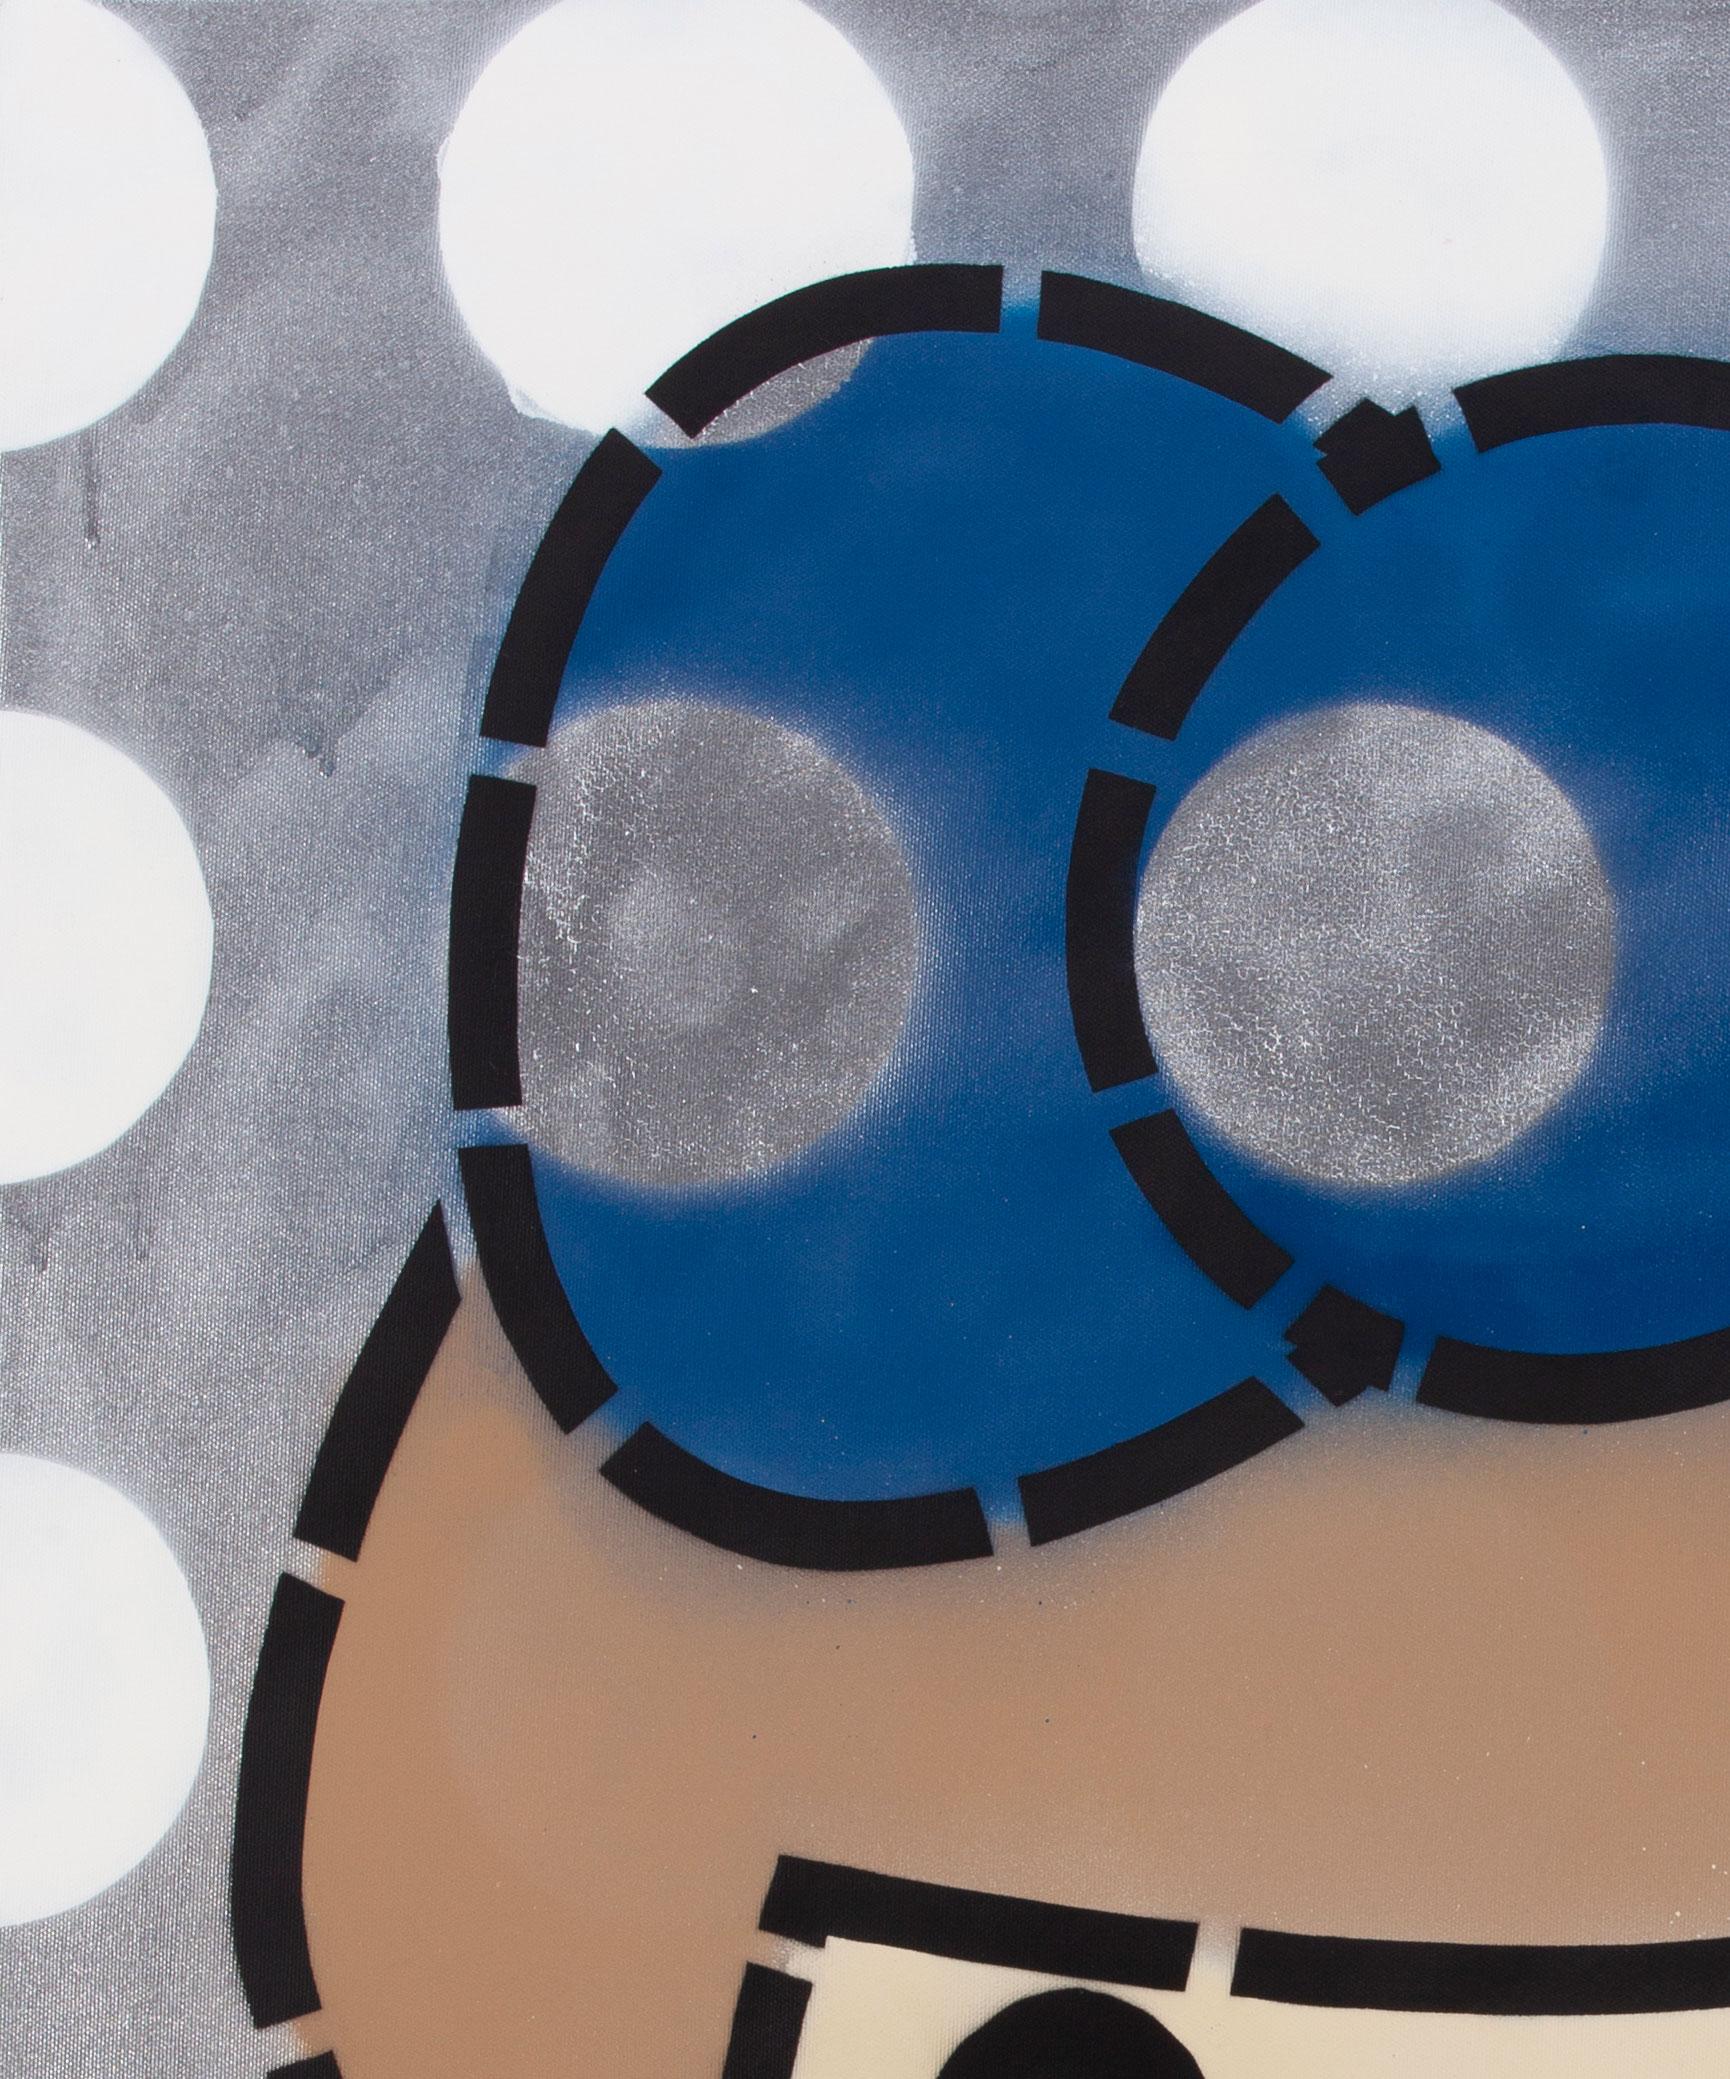 TITEL: Gioconda-Punkte weiß silber
KÜNSTLER: Tomoko Nagao
JAHR: 2019
MEDIUM-TYP: Malerei
MITTEL/MATERIALIEN: Spray auf Leinwand
ABMESSUNGEN: 120 x 100 cm